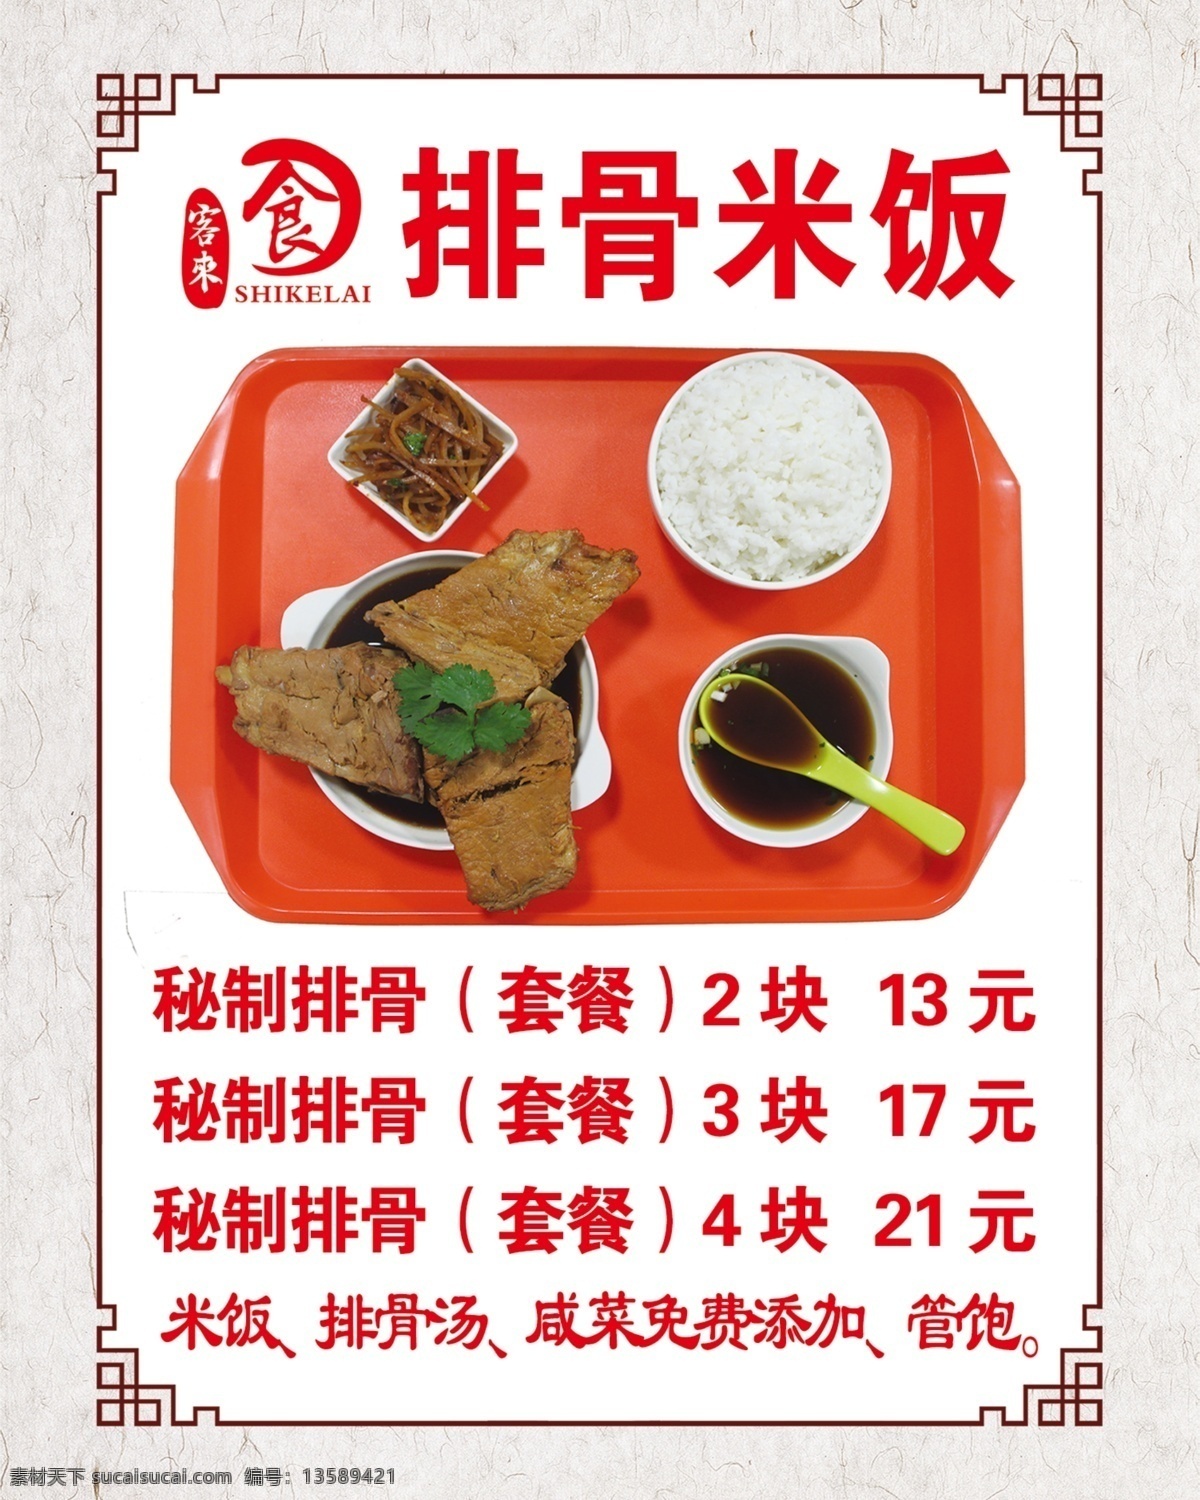 排骨米饭 米饭 排骨 中餐 快餐 灯箱 菜牌 菜单 中国风 中式 边框 画框 镂空 简餐 分层